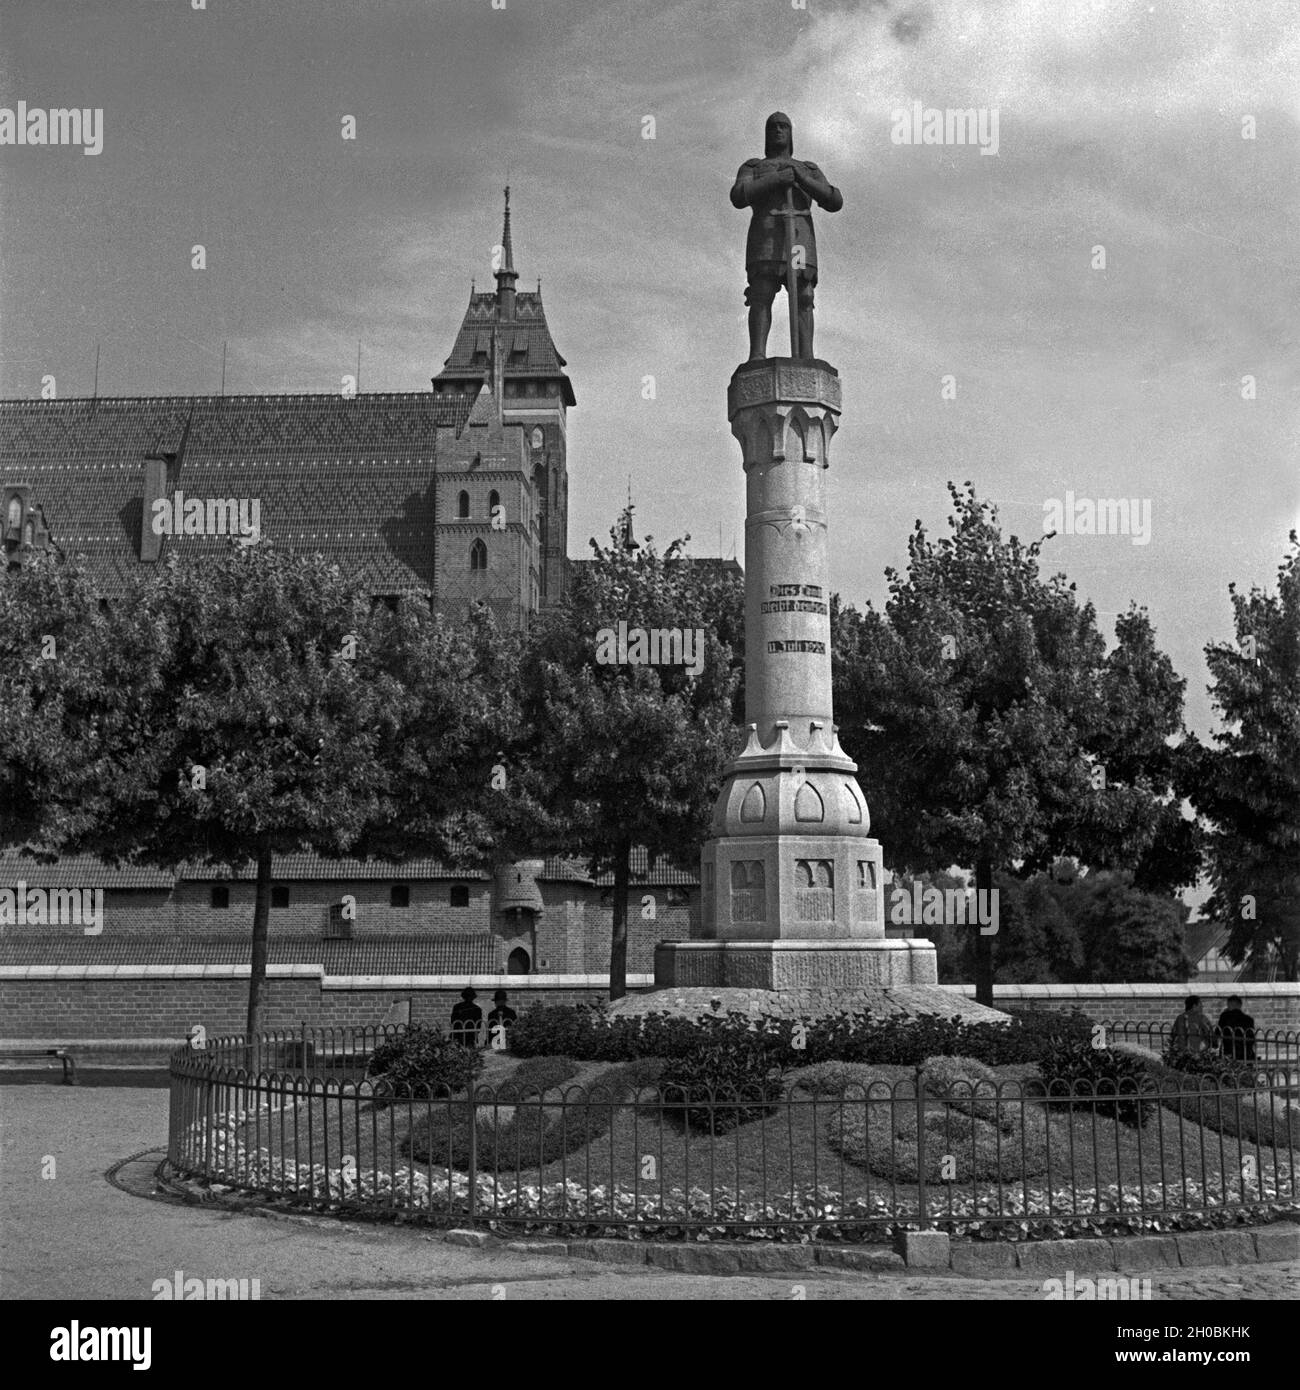 Die Ordensburg Marienburg mit dem Abstimmungsdenkmal von 11. Juli 1920 in Ostpreußen, 1930er Jahre. Ordensburg Marienburg mit stimmzettel Denkmal in Ostpreußen, Deutschland 1930. Stockfoto